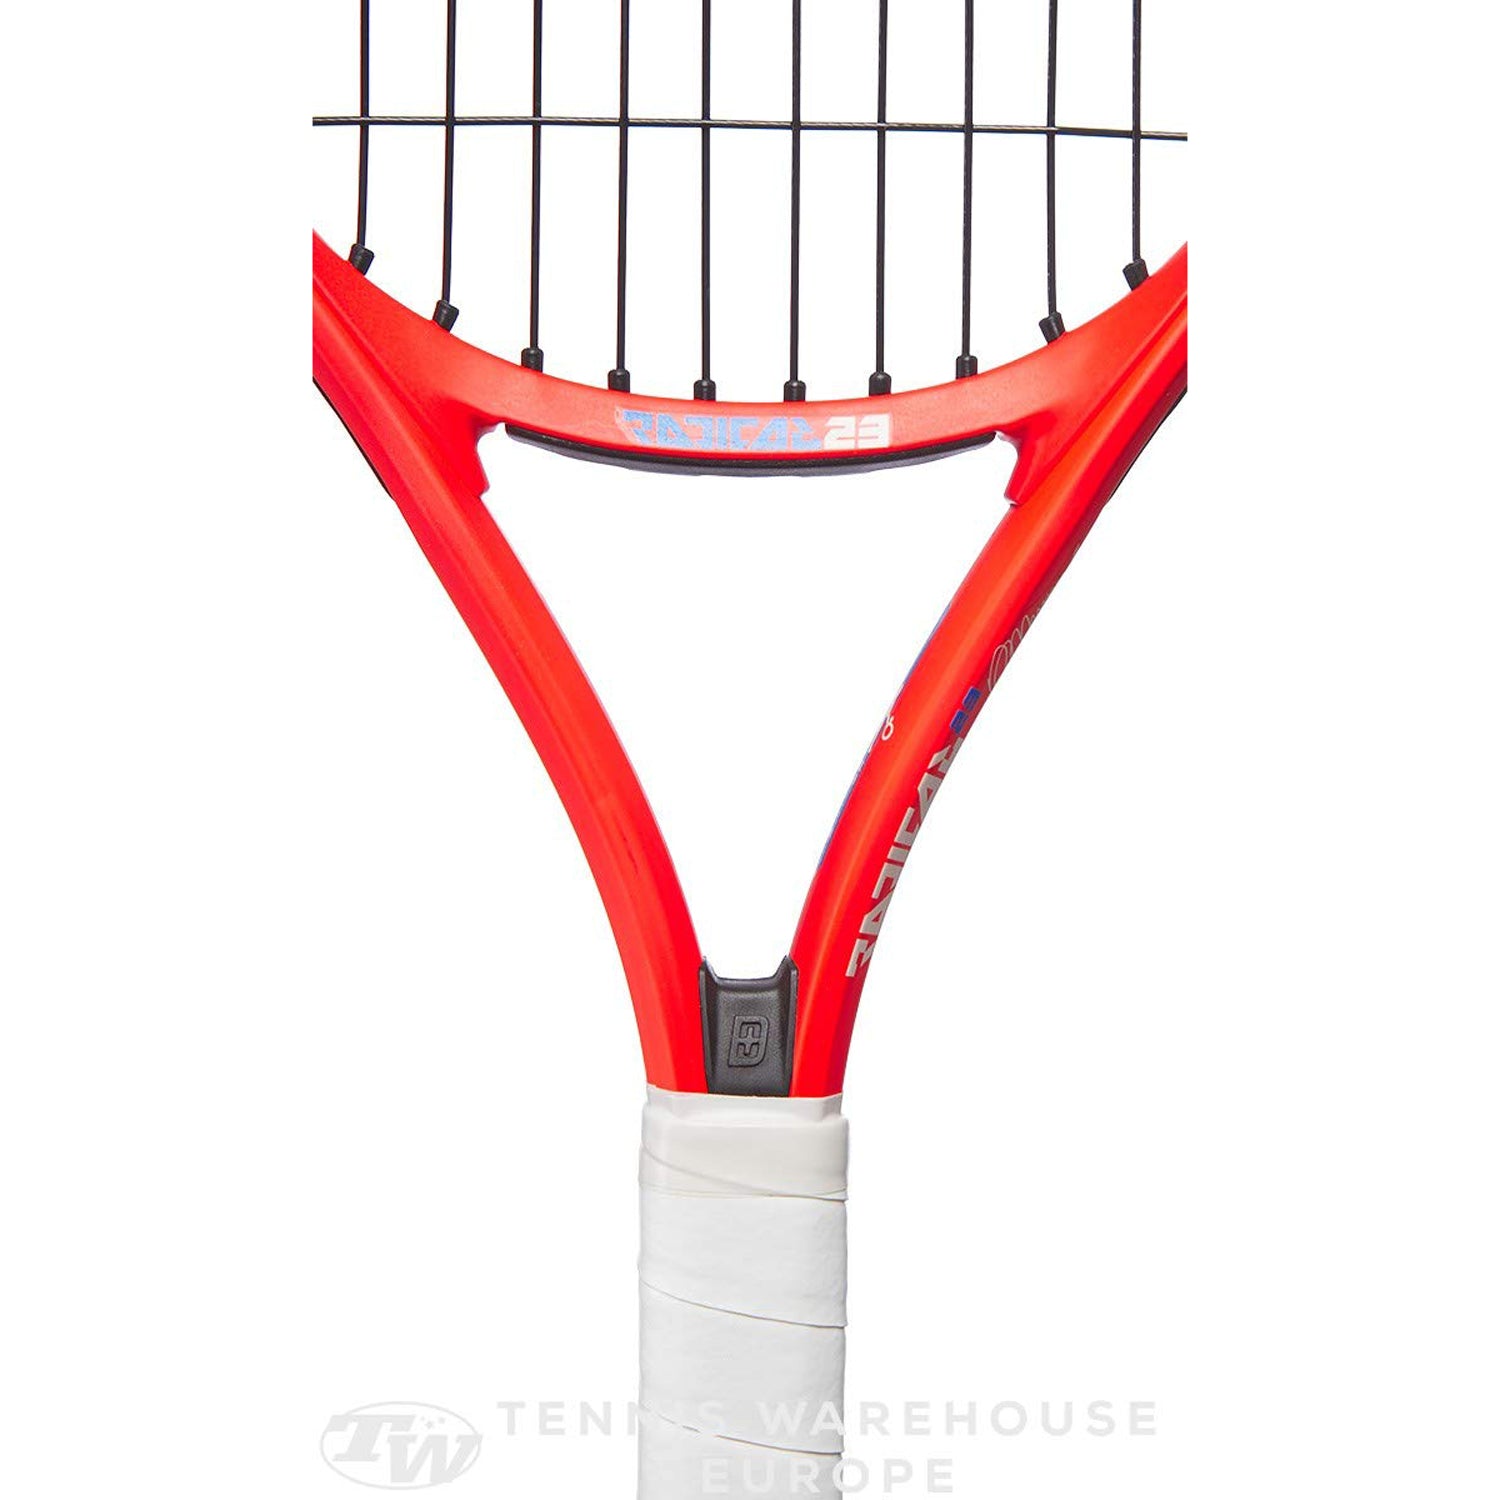 HEAD Radical 23 Strung Tennis Racquet for Juniors, 3/6-8 - Best Price online Prokicksports.com